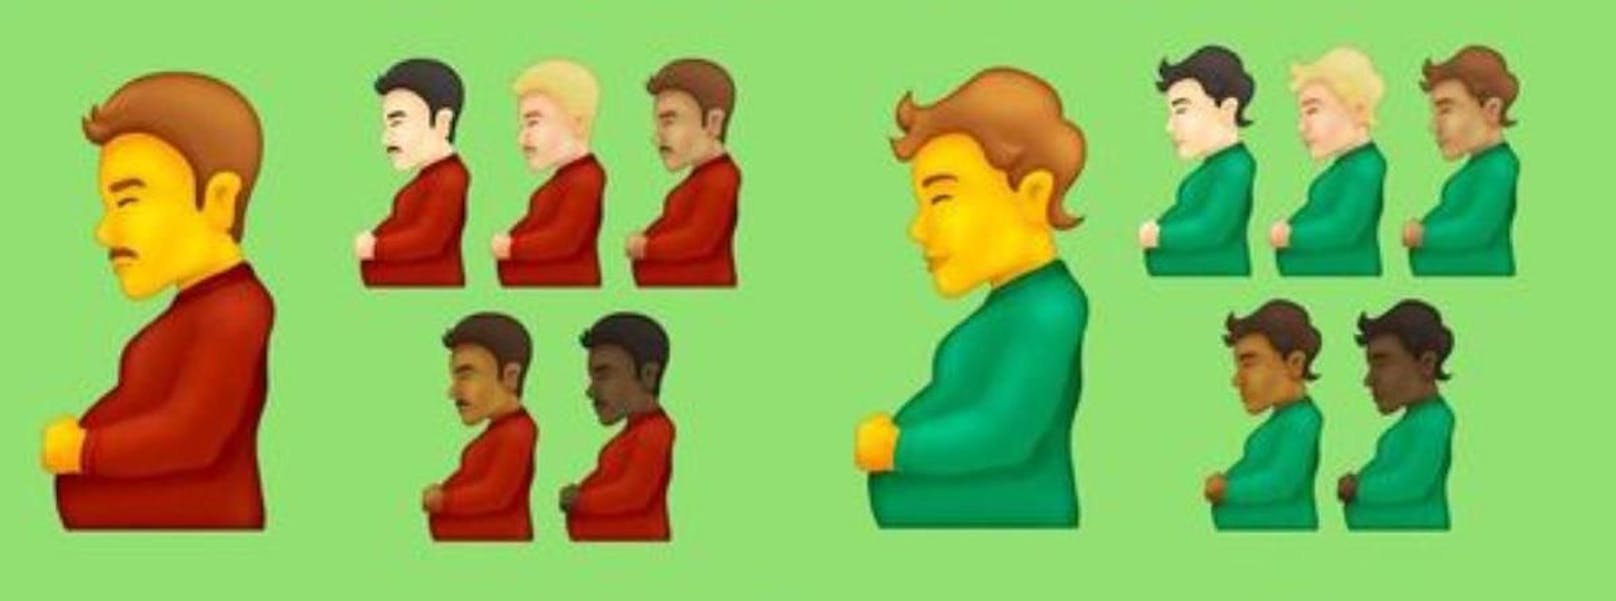 Bald werden Emojis verfügbar sein, die eine männlich aussehende, schwangere Person zeigen.